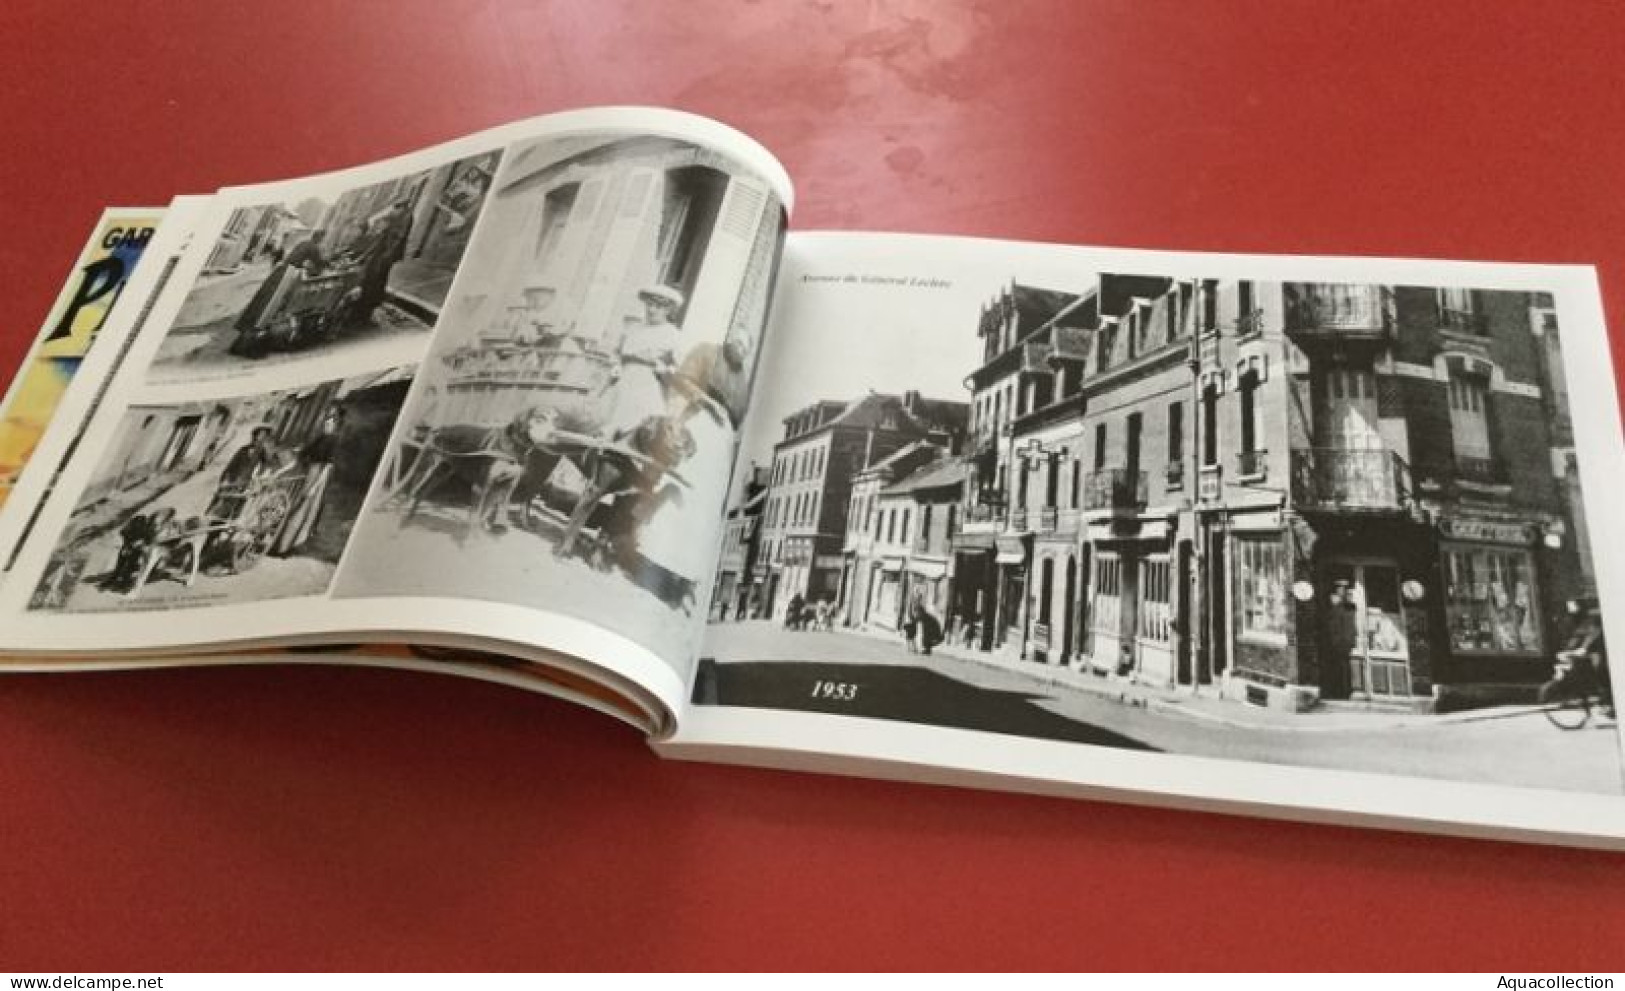 Livre "AULT - Album Souvenirs". 200 pages. 650 photos anciennes inédites, cartes postales & documents rares.